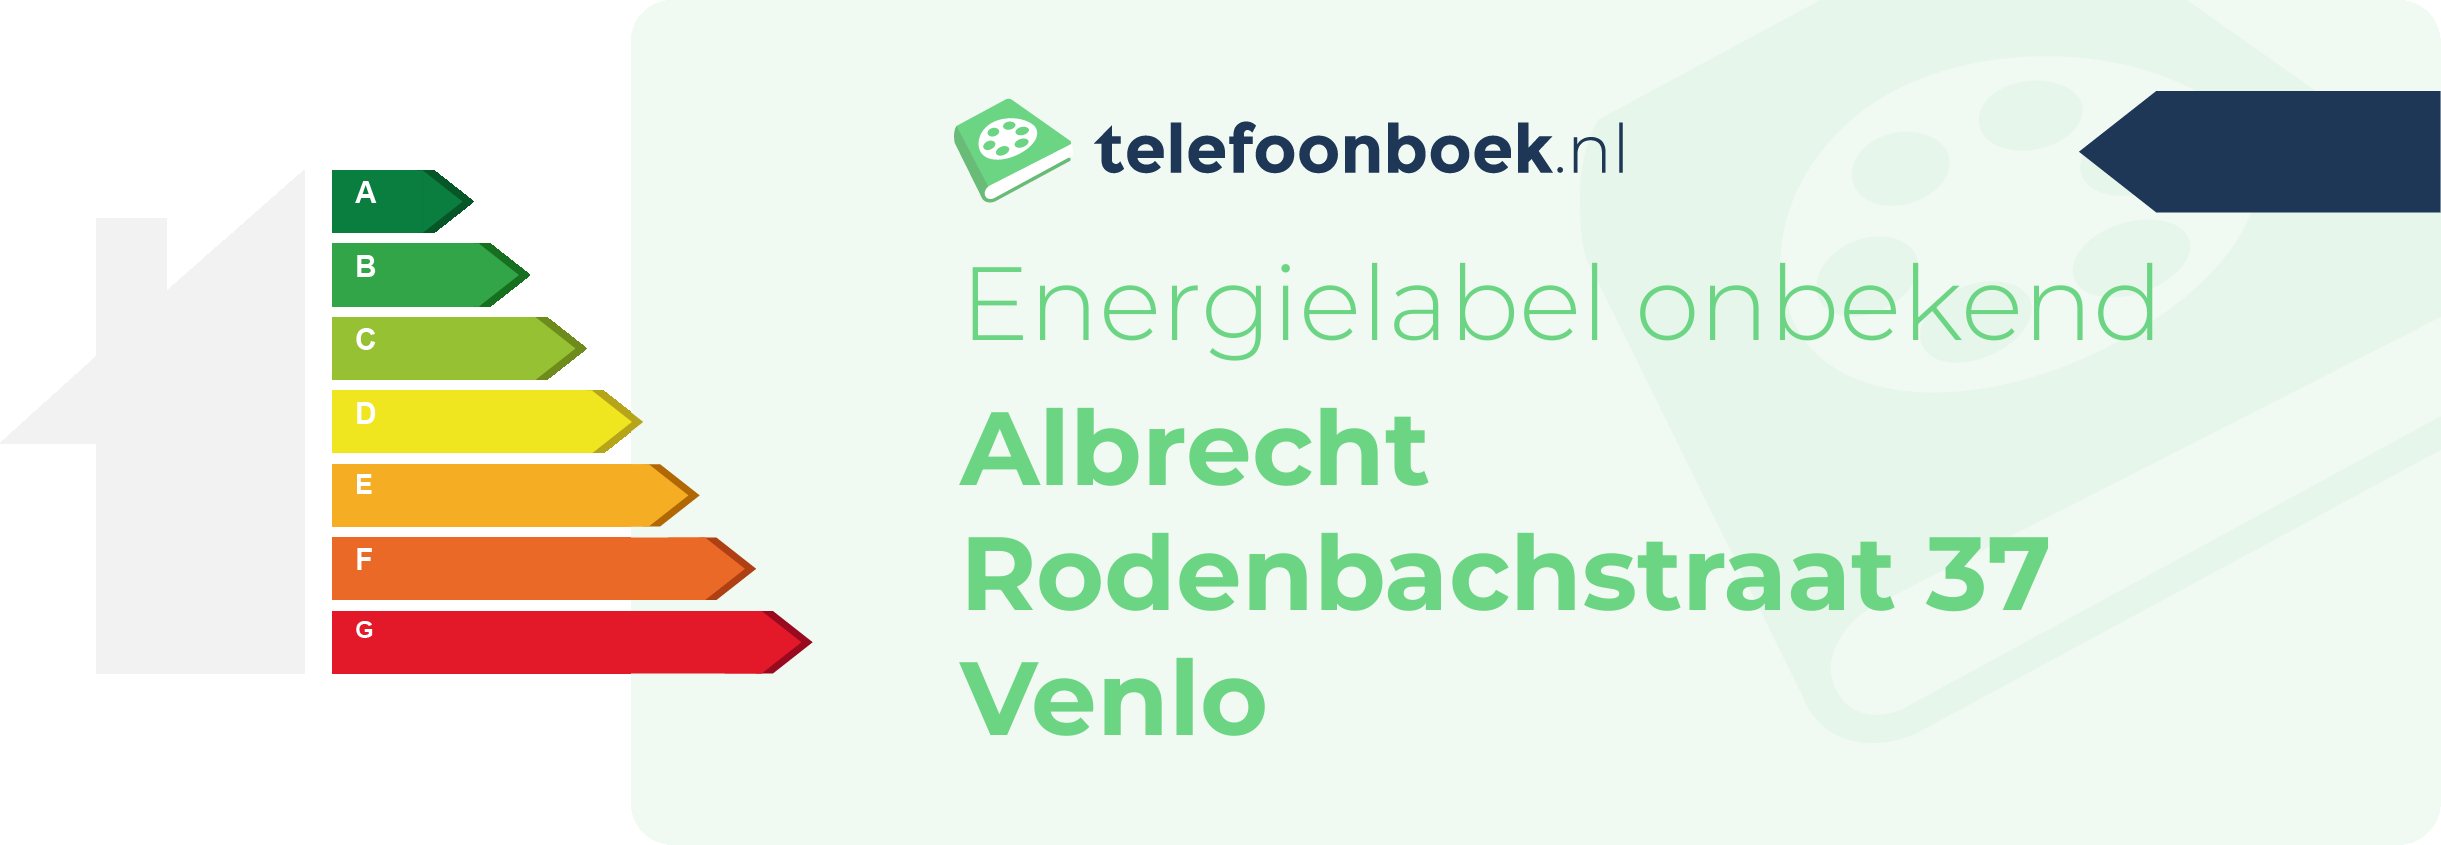 Energielabel Albrecht Rodenbachstraat 37 Venlo